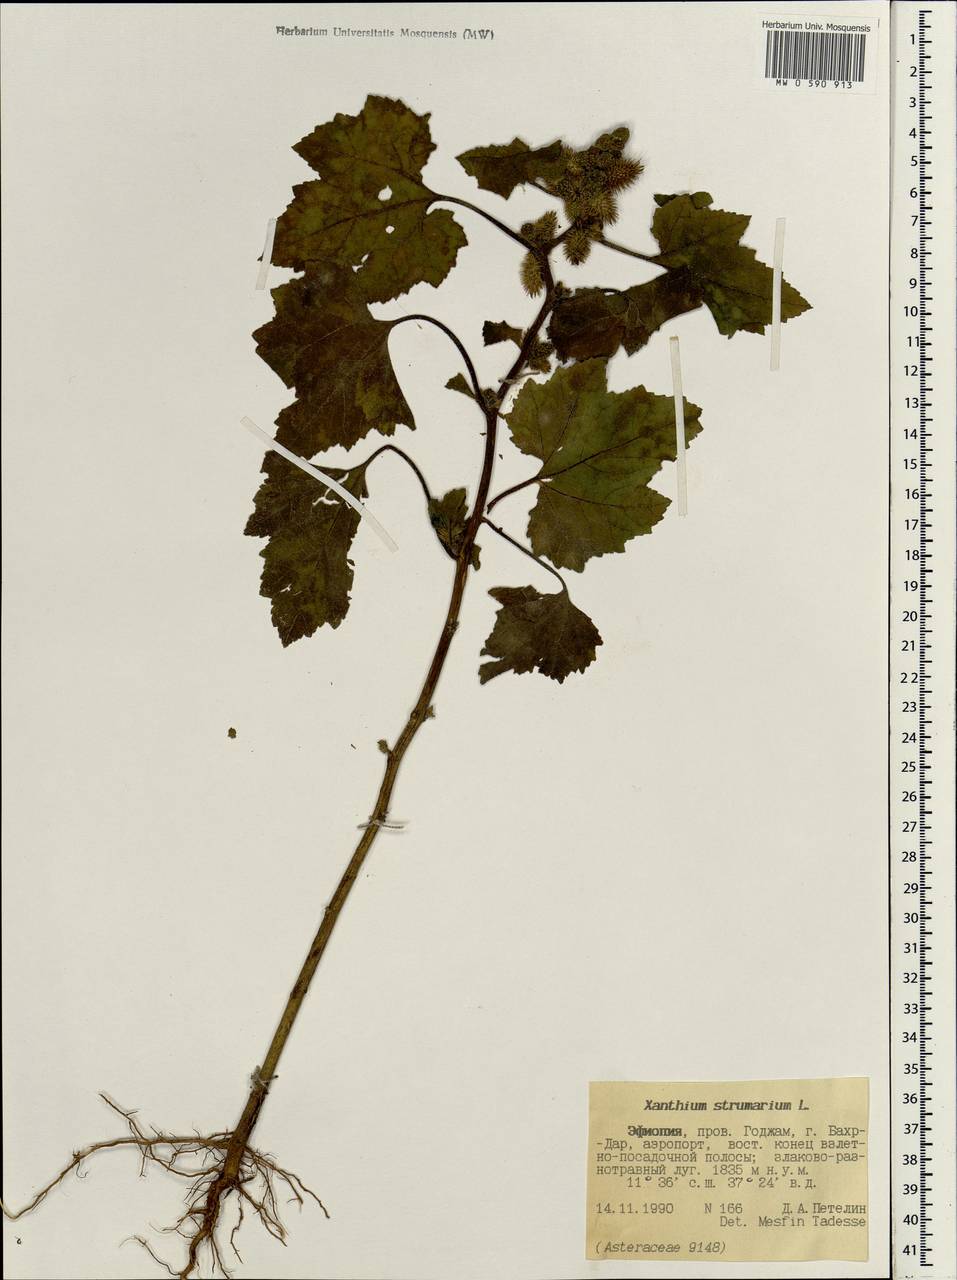 Xanthium strumarium L., Africa (AFR) (Ethiopia)